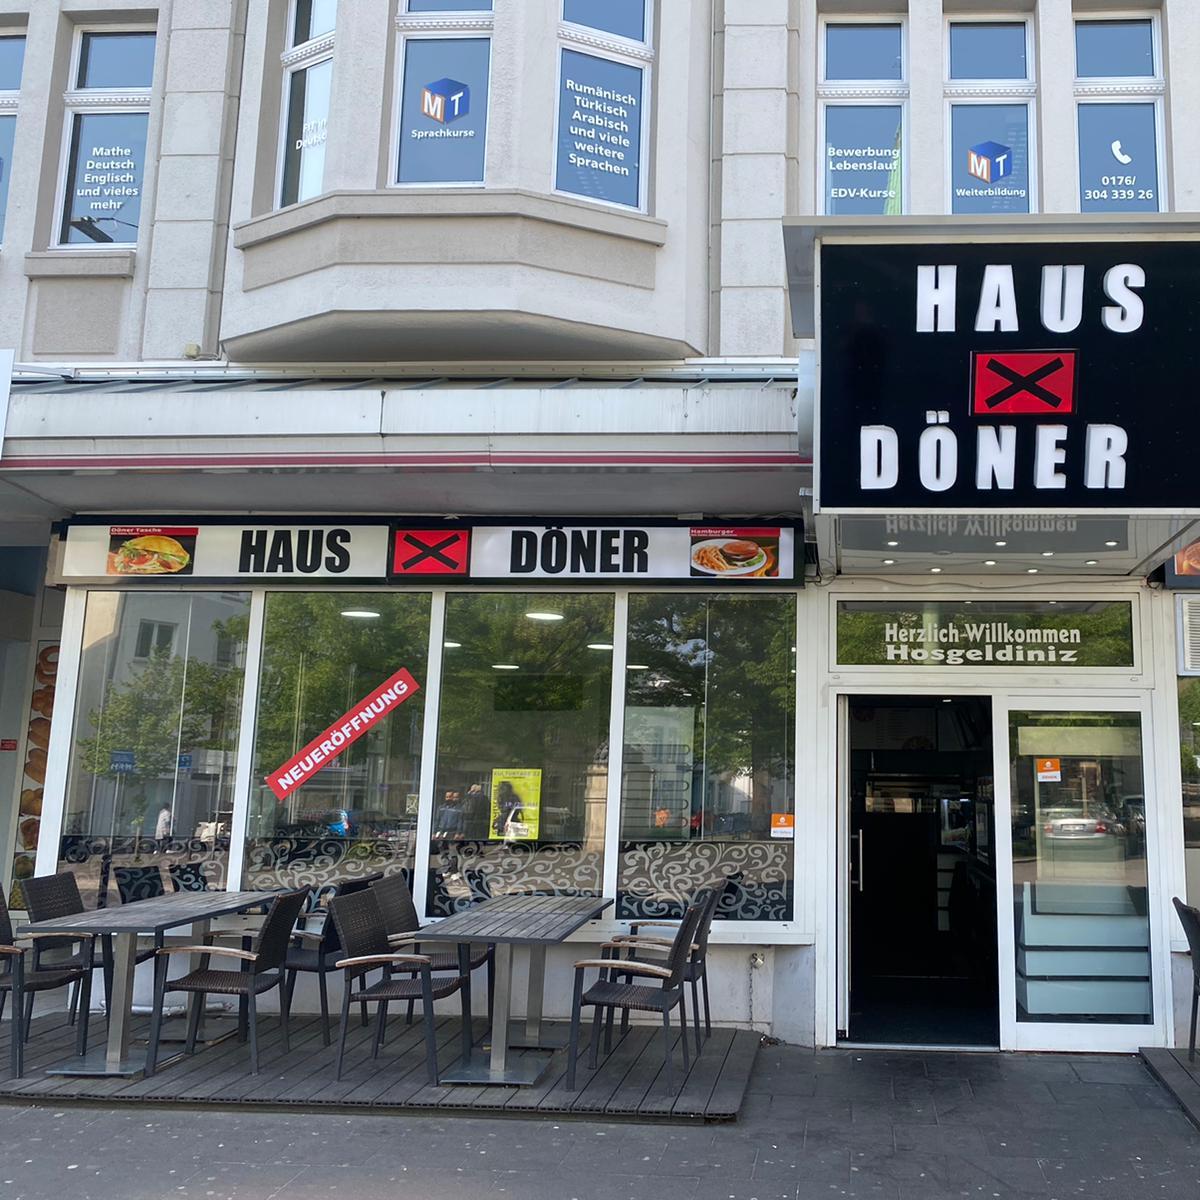 Restaurant "Haus X Döner" in Hagen